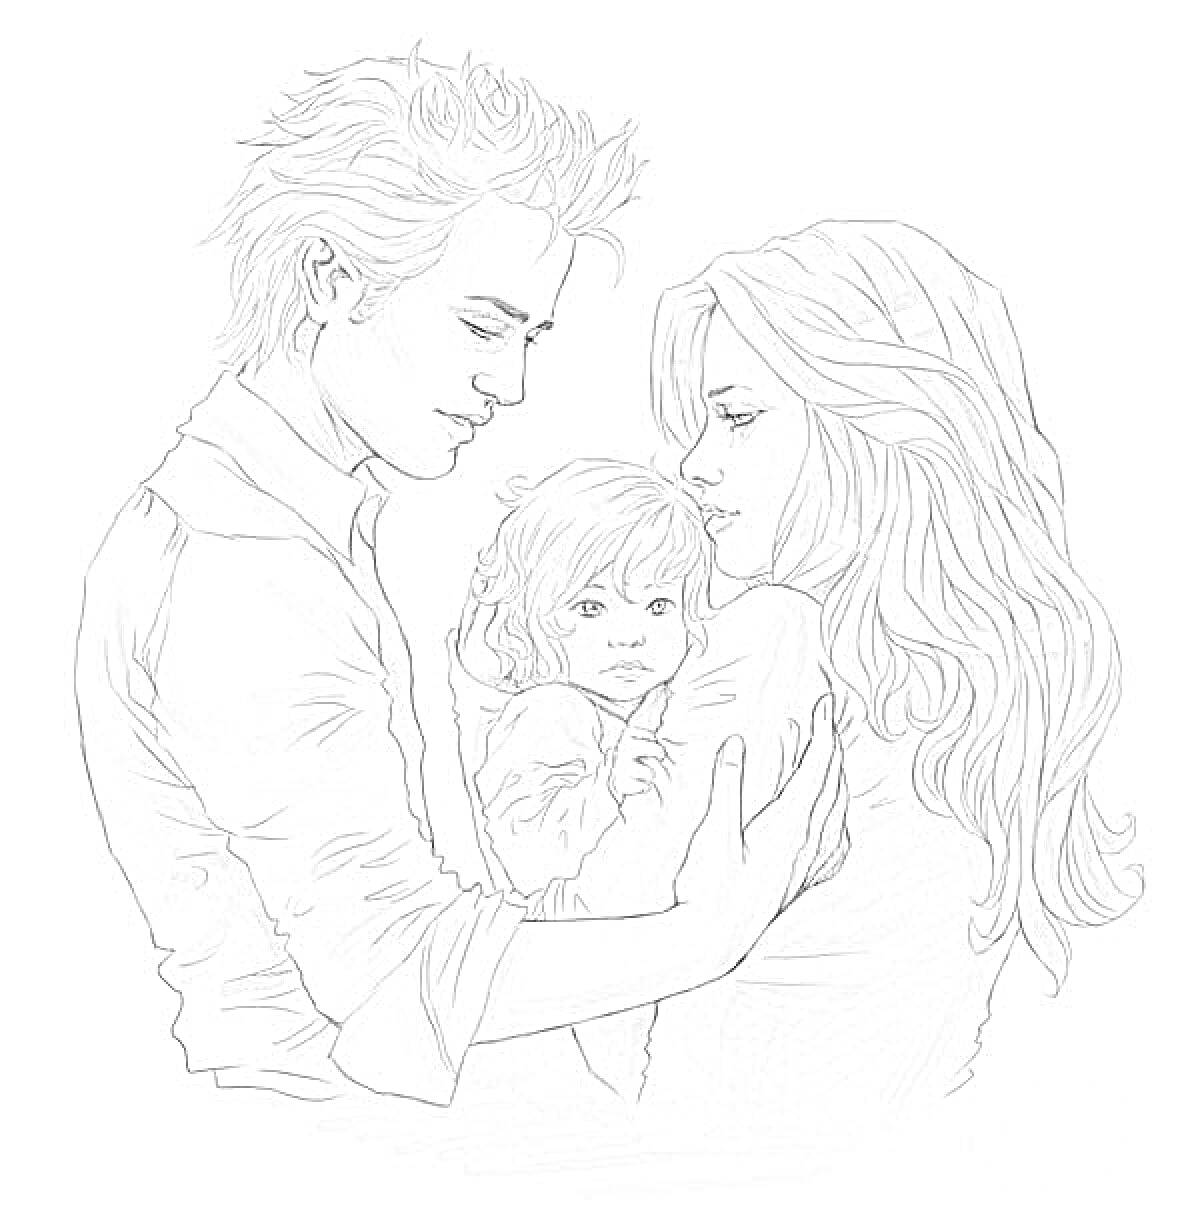 Раскраска Семья с маленьким ребенком на руках у женщины, рядом стоит мужчина с прической в стиле 